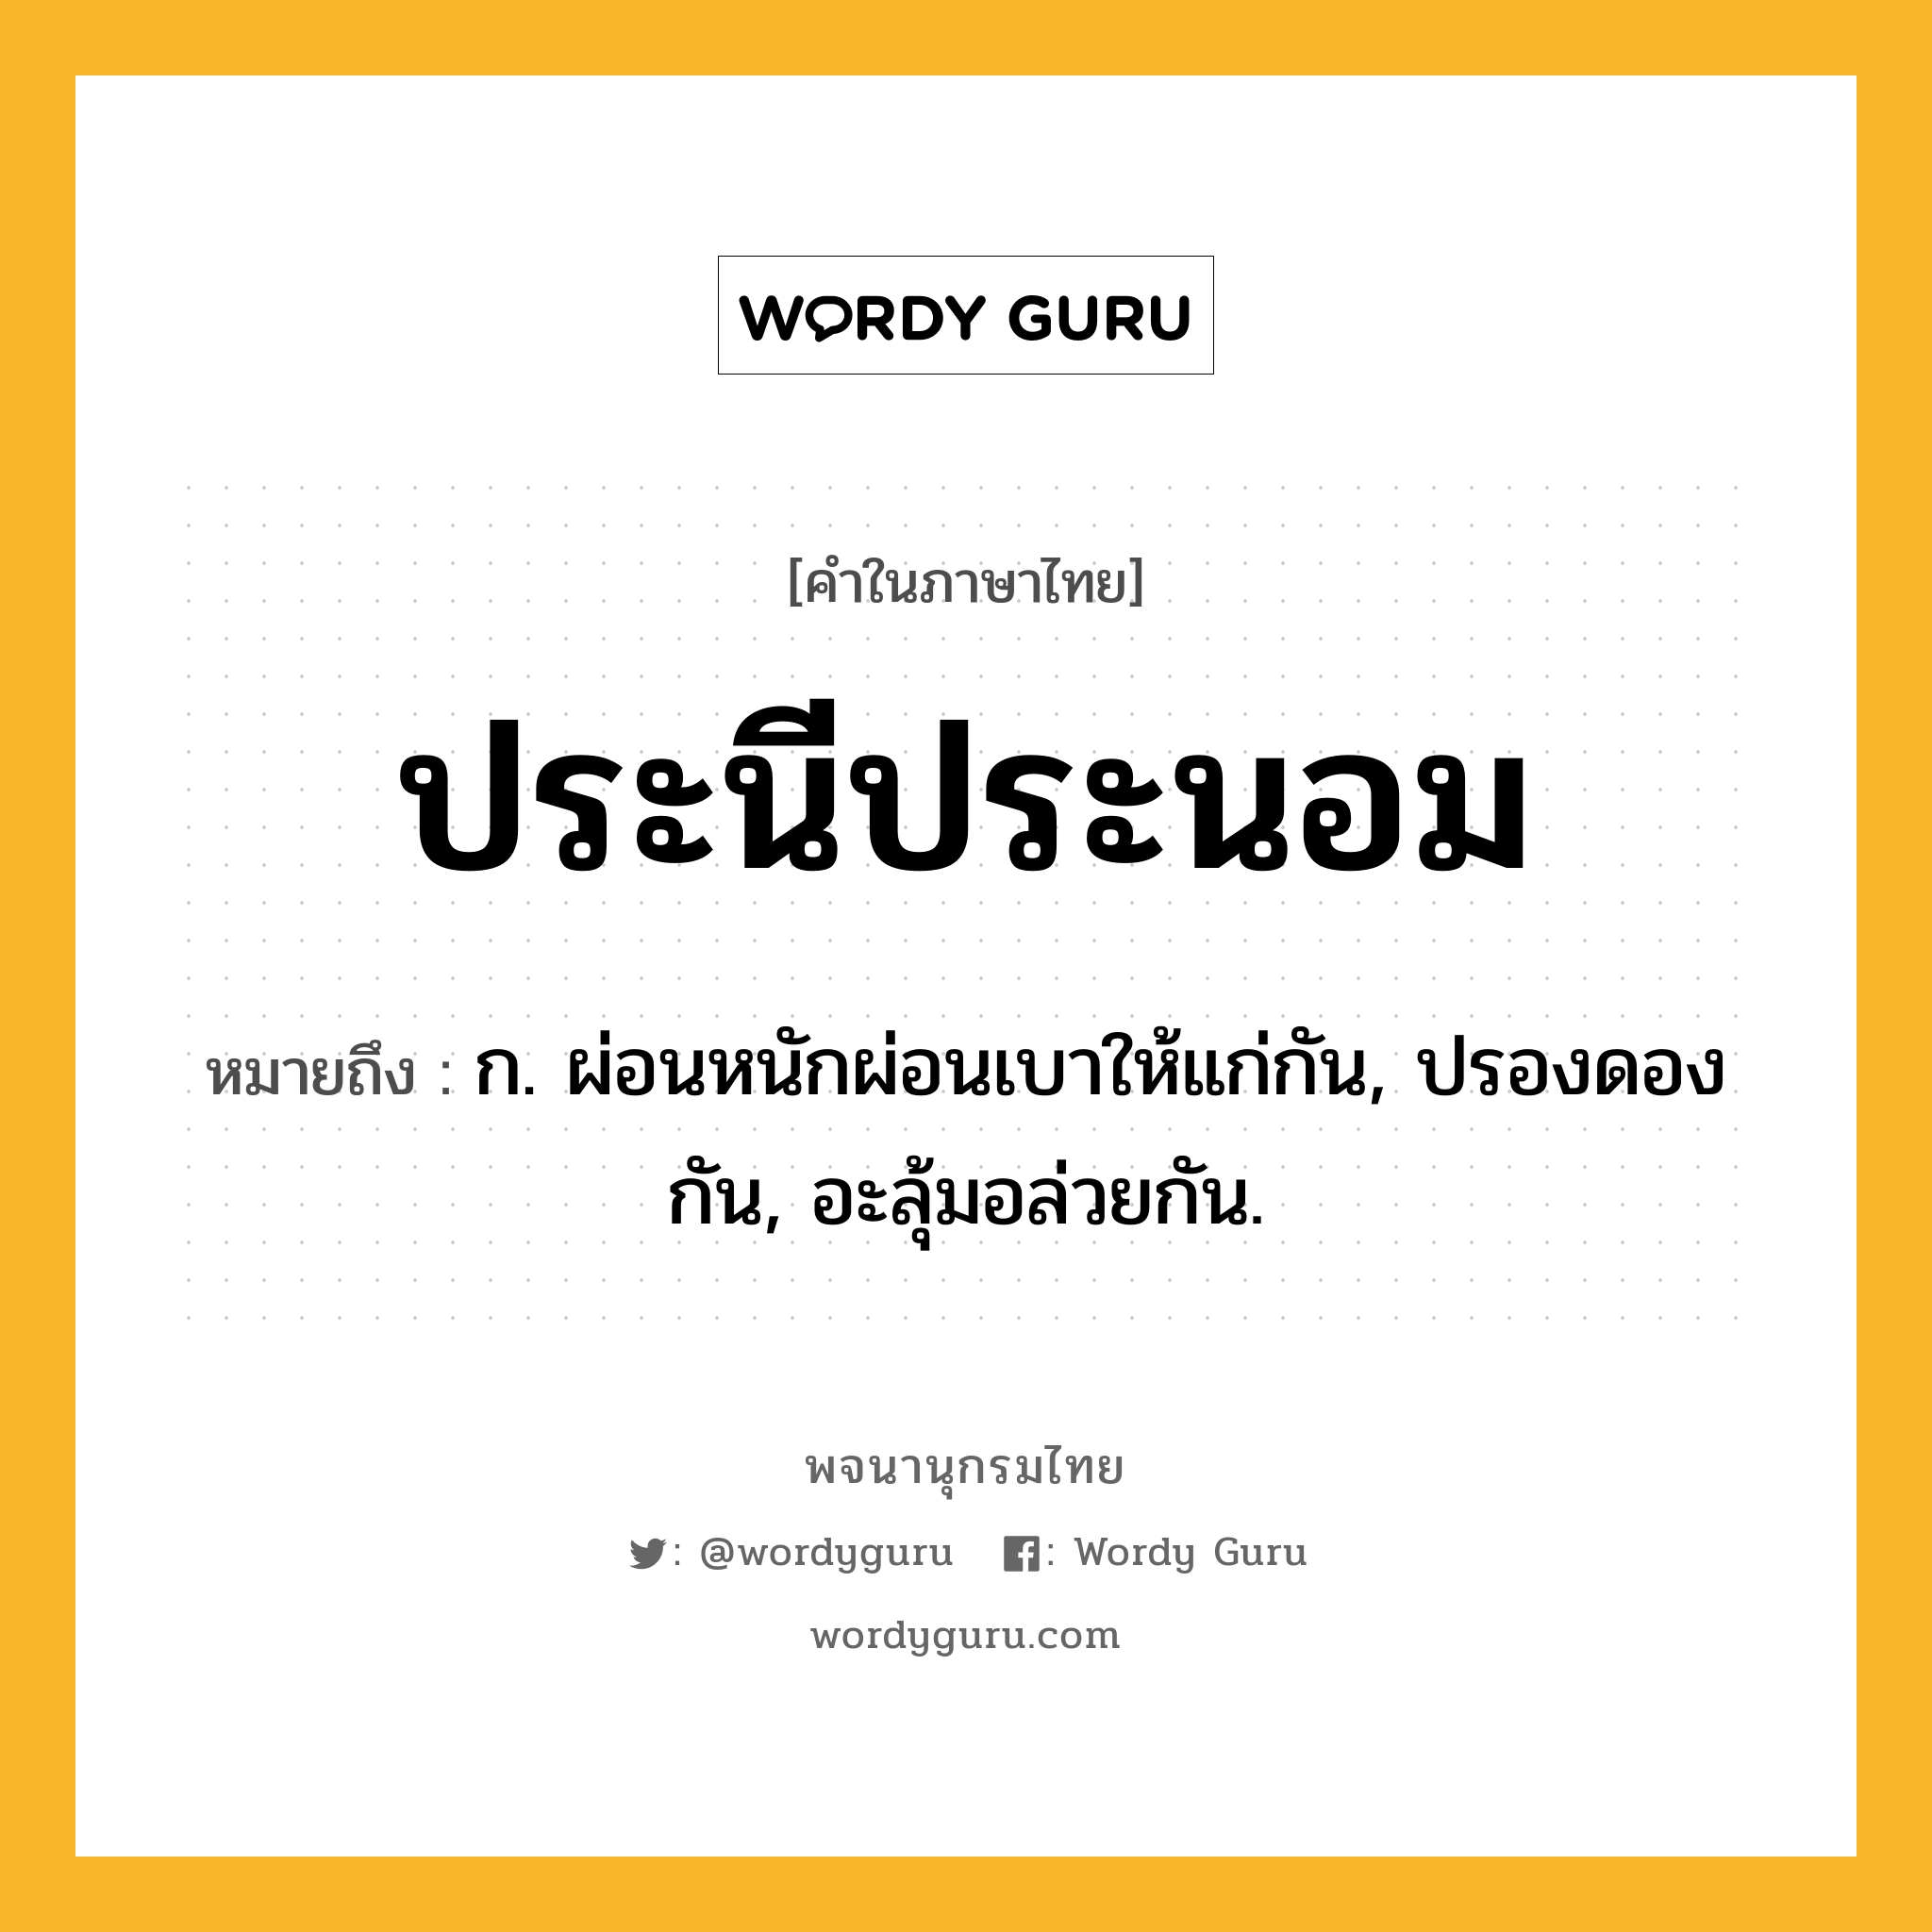 ประนีประนอม หมายถึงอะไร?, คำในภาษาไทย ประนีประนอม หมายถึง ก. ผ่อนหนักผ่อนเบาให้แก่กัน, ปรองดองกัน, อะลุ้มอล่วยกัน.